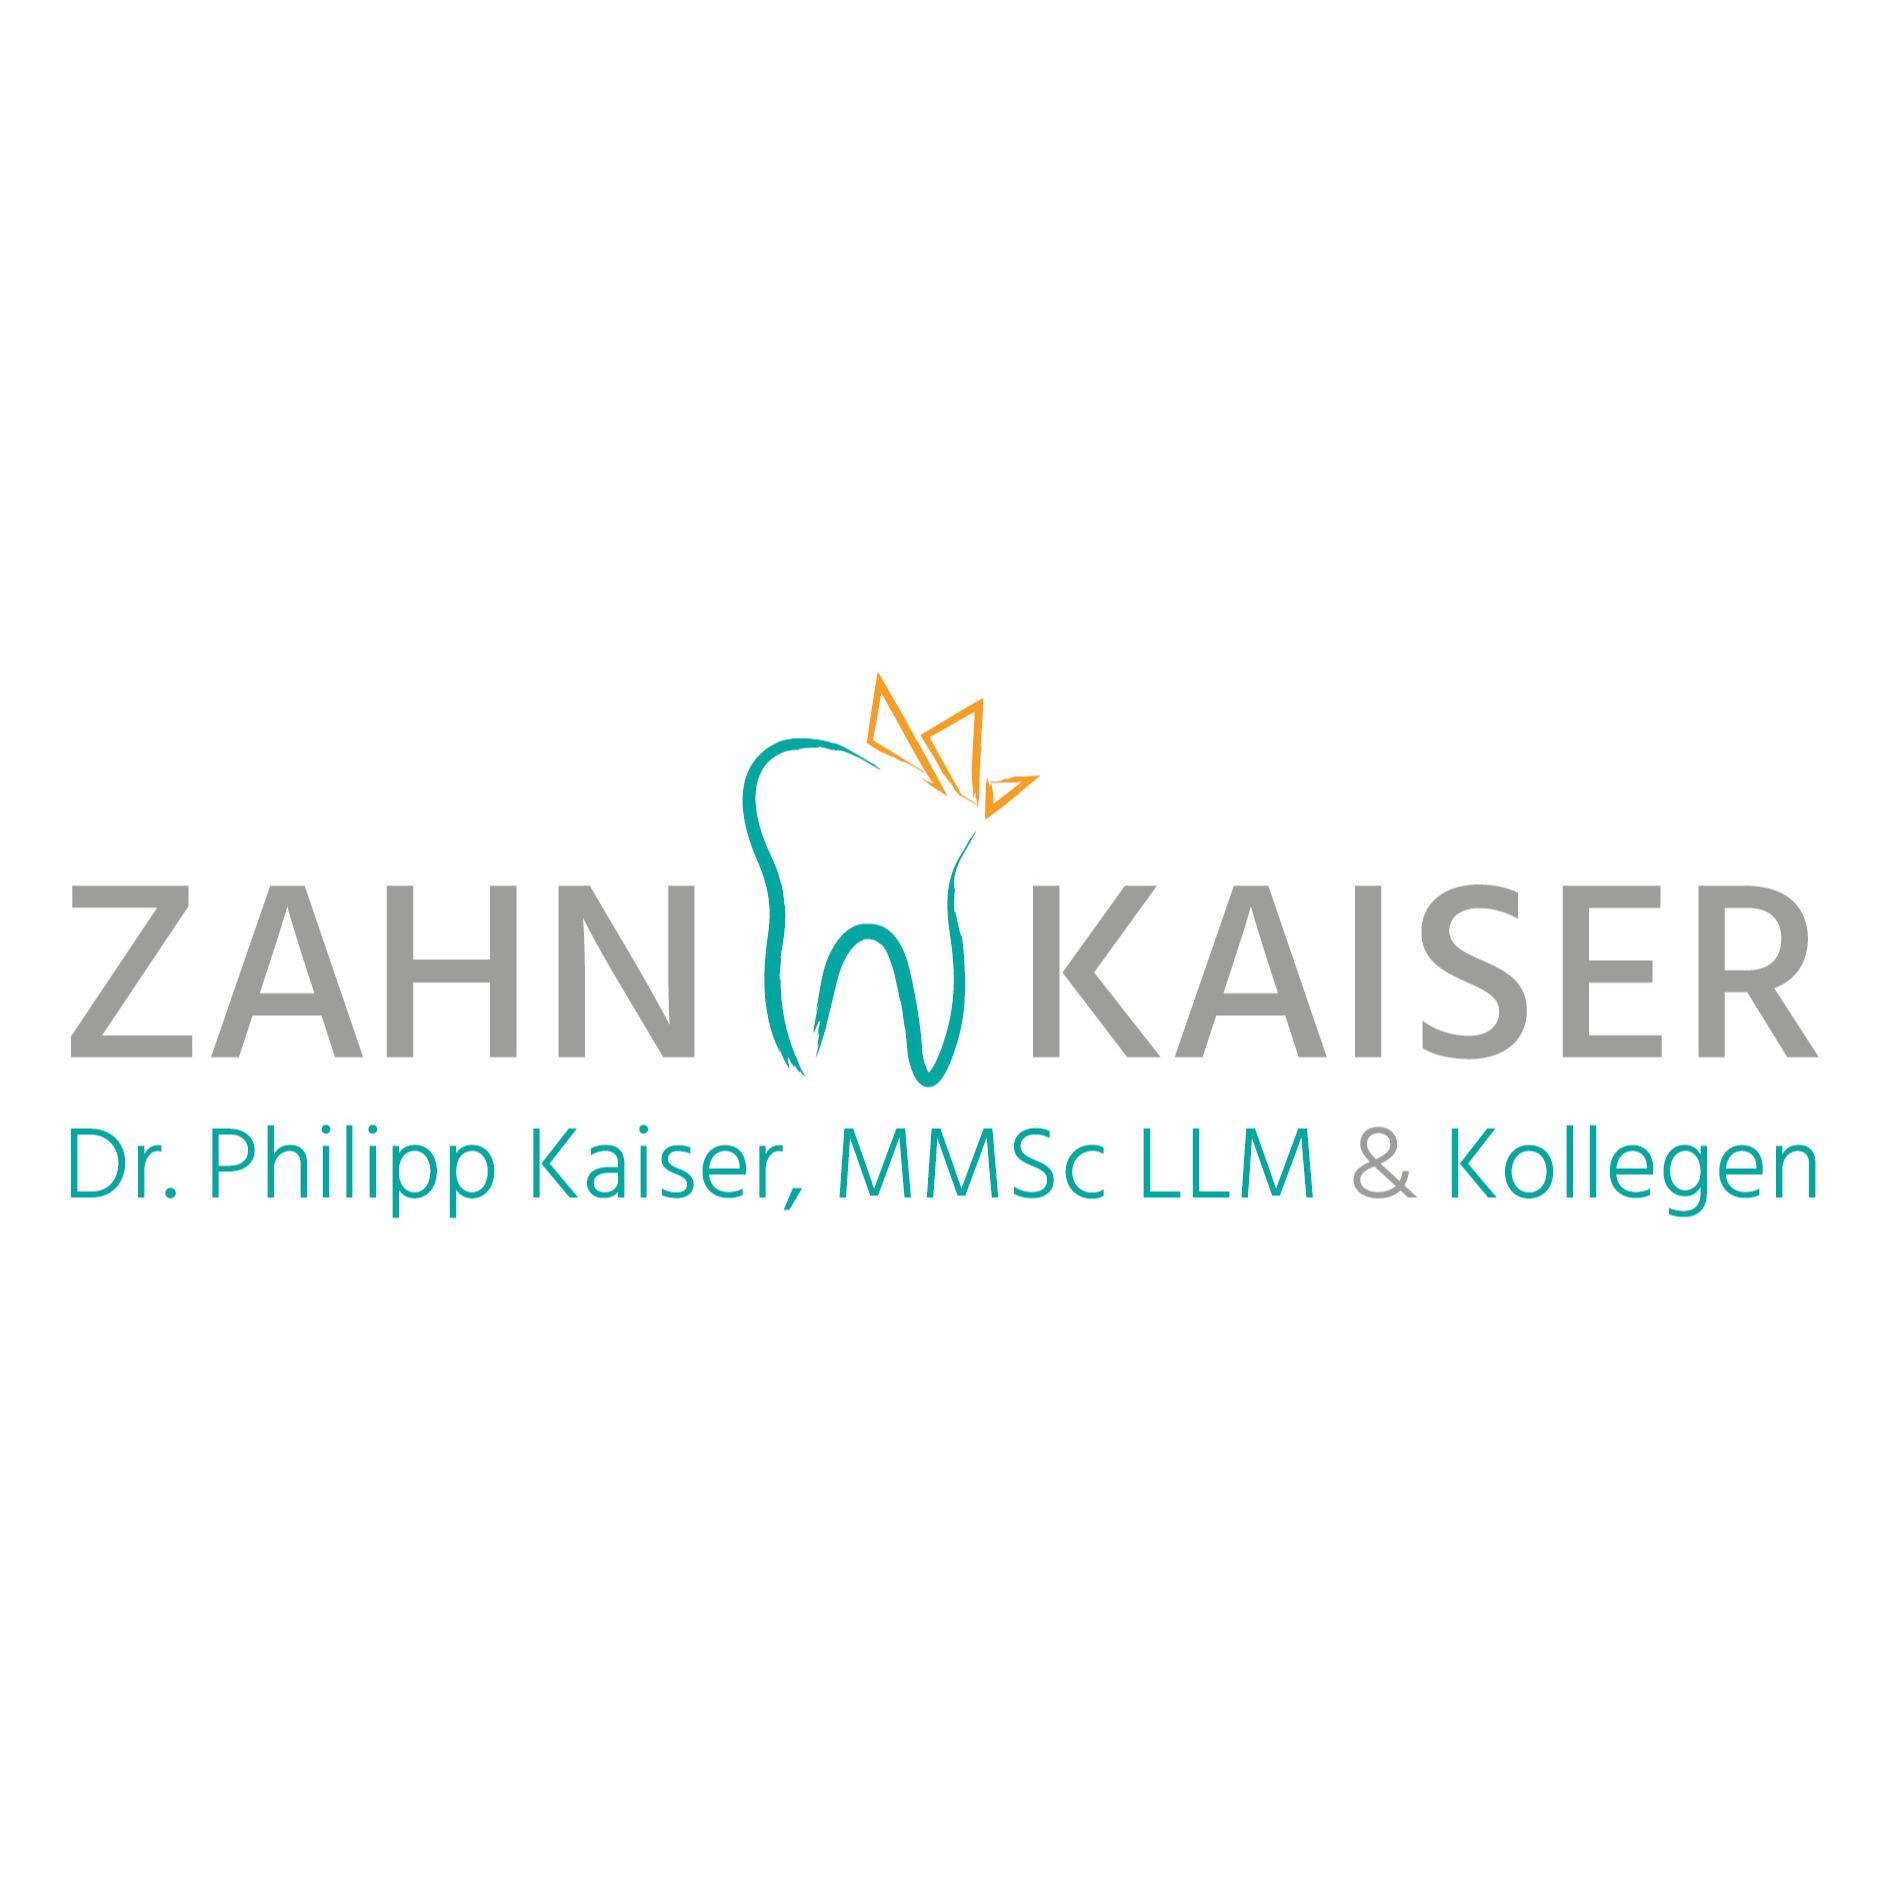 Zahnarztpraxis Dr. Philipp Kaiser MMSc LLM & Kollegen Logo